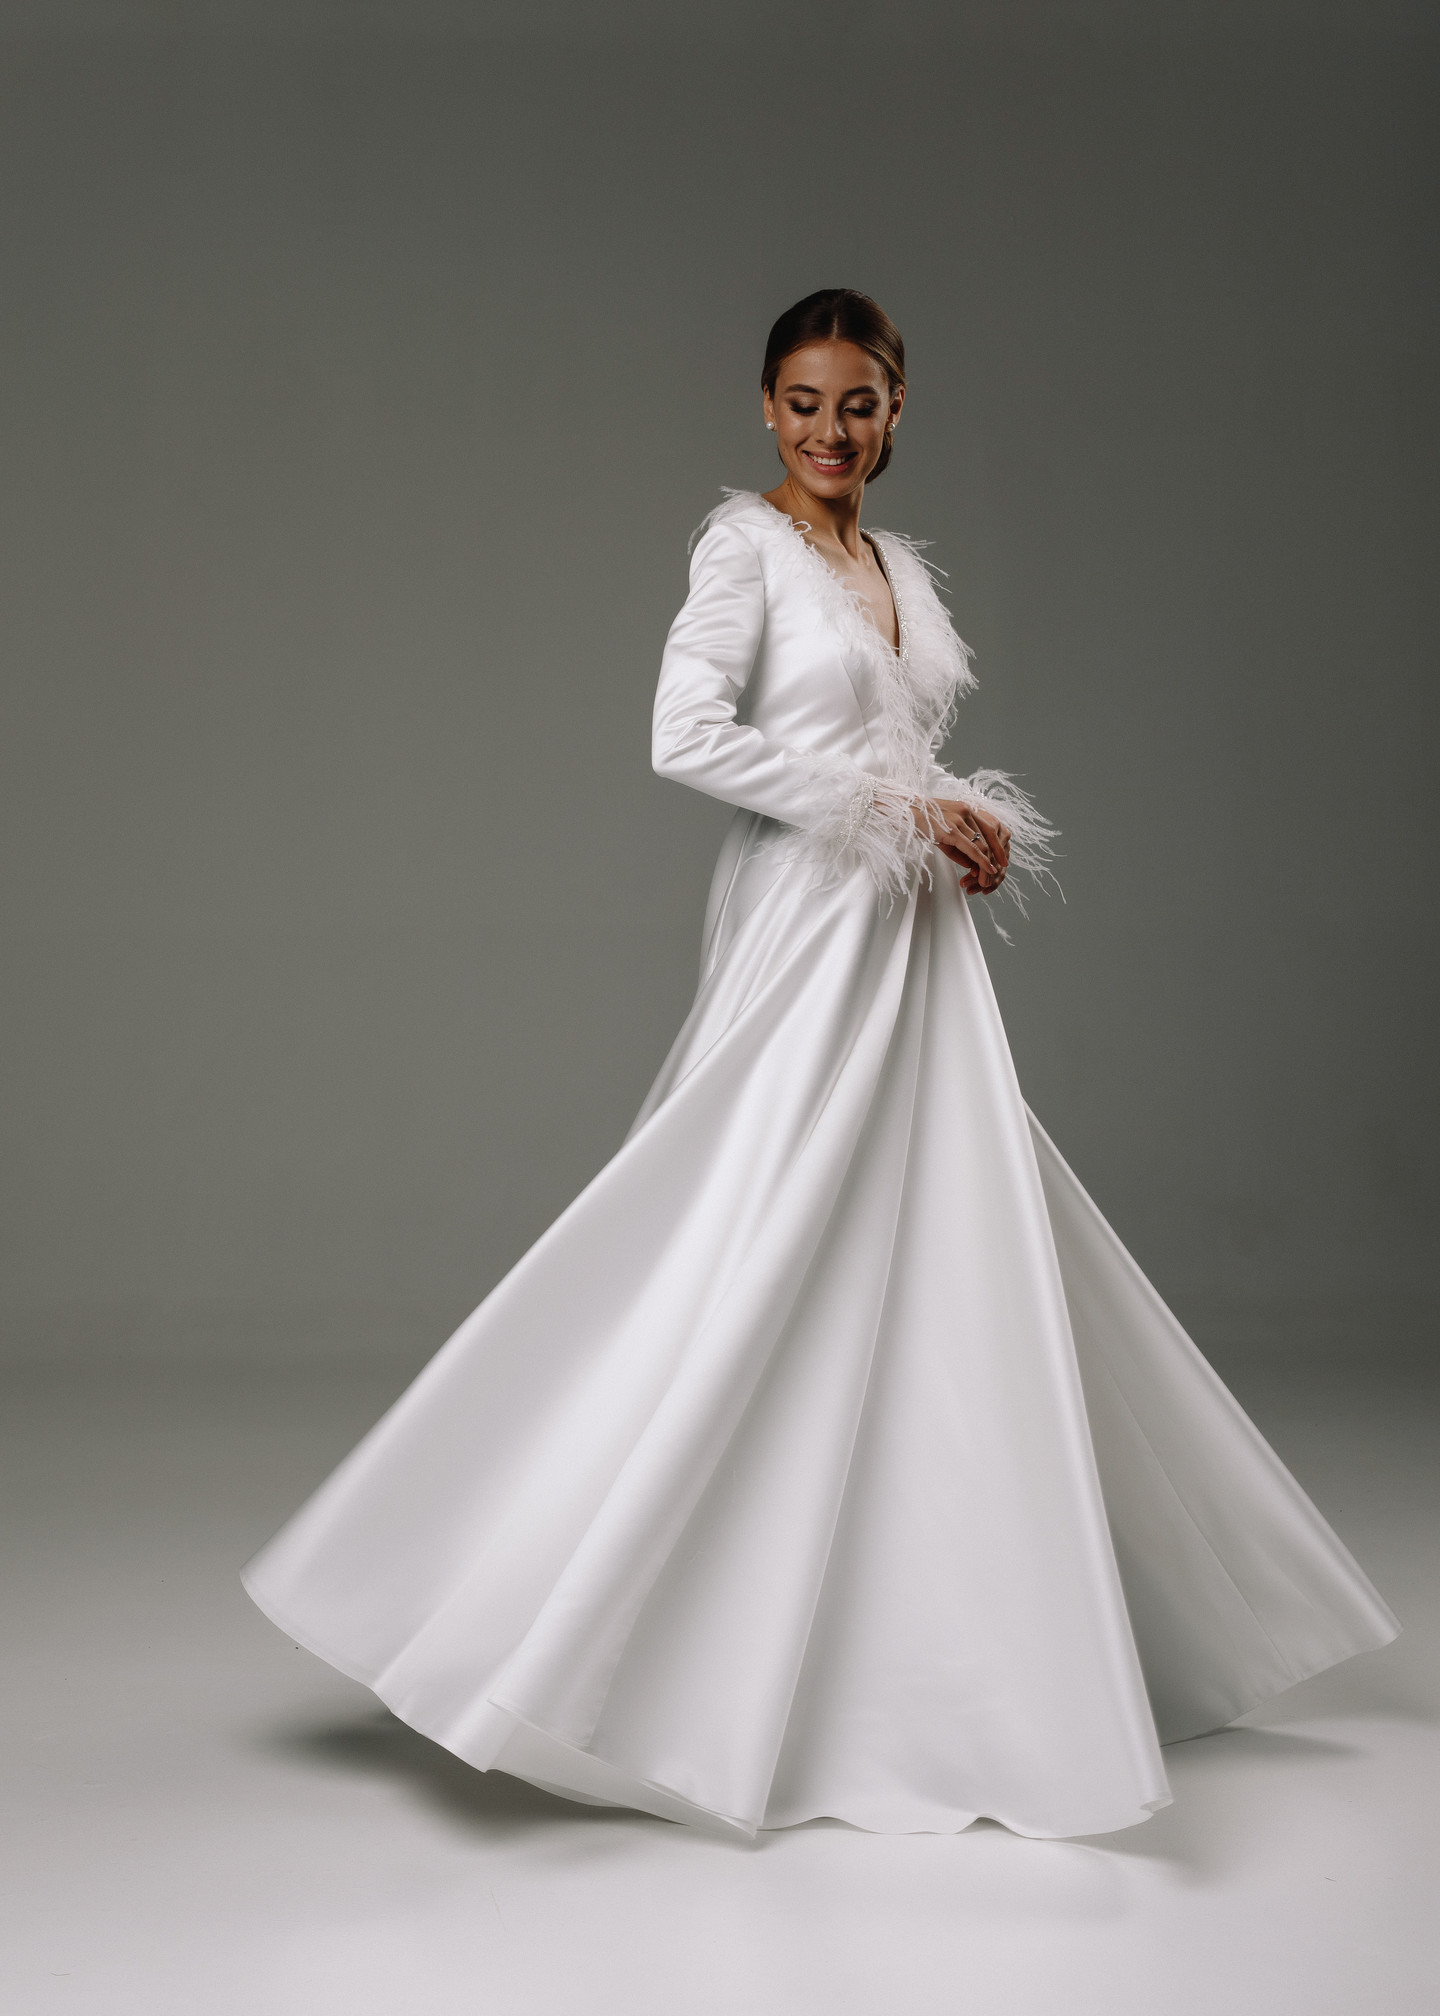 Платье Анисья, 2020, одежда, платье, свадебное, молочно-белый, атлас, вышивка, А-силуэт, рукава, архив